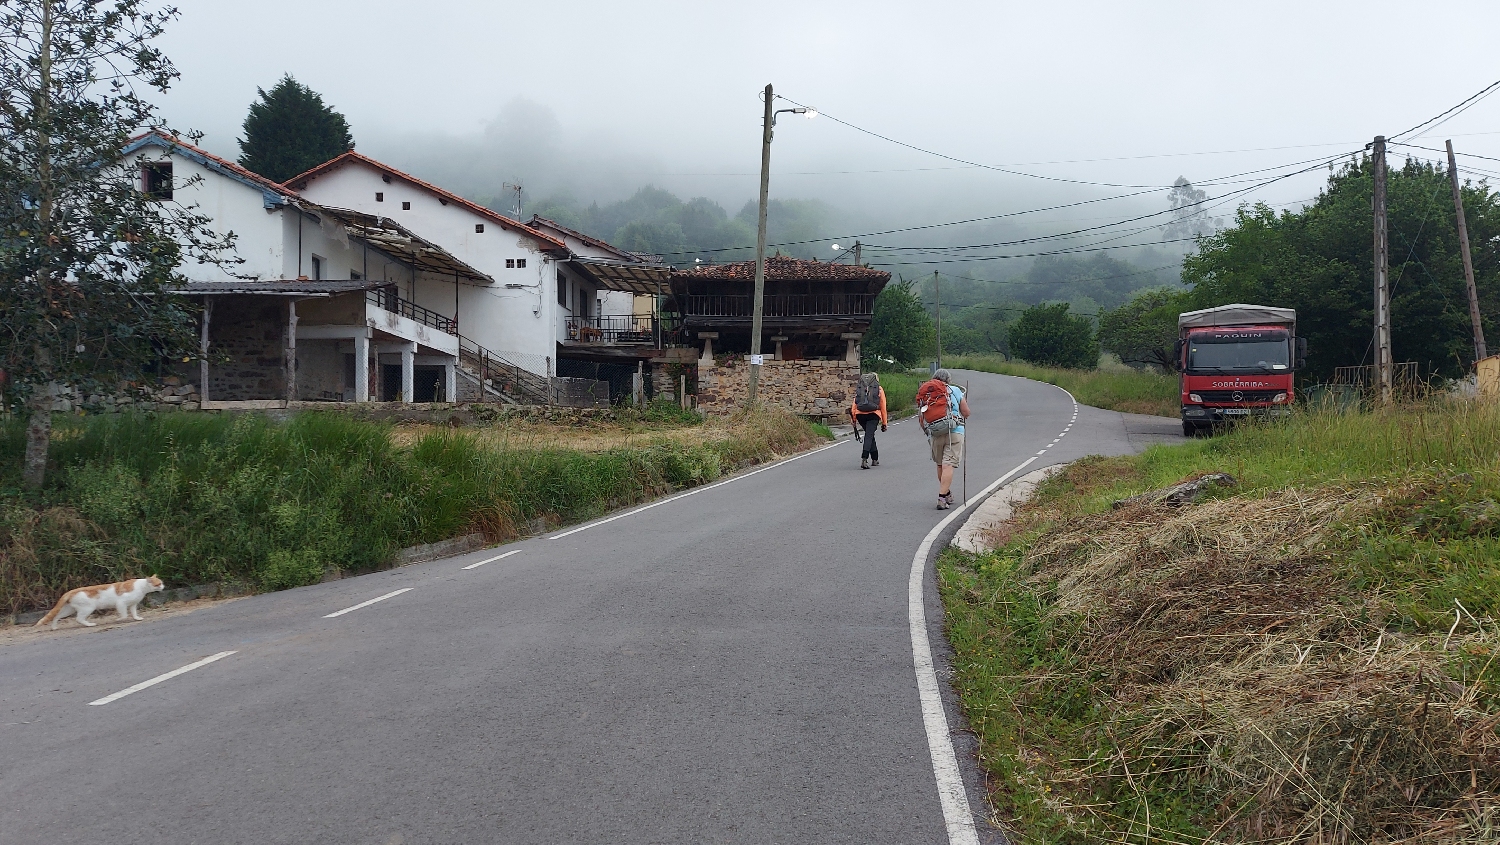 Camino Primitivo, aszfaltút vezet a hegyre fel Cornellana után